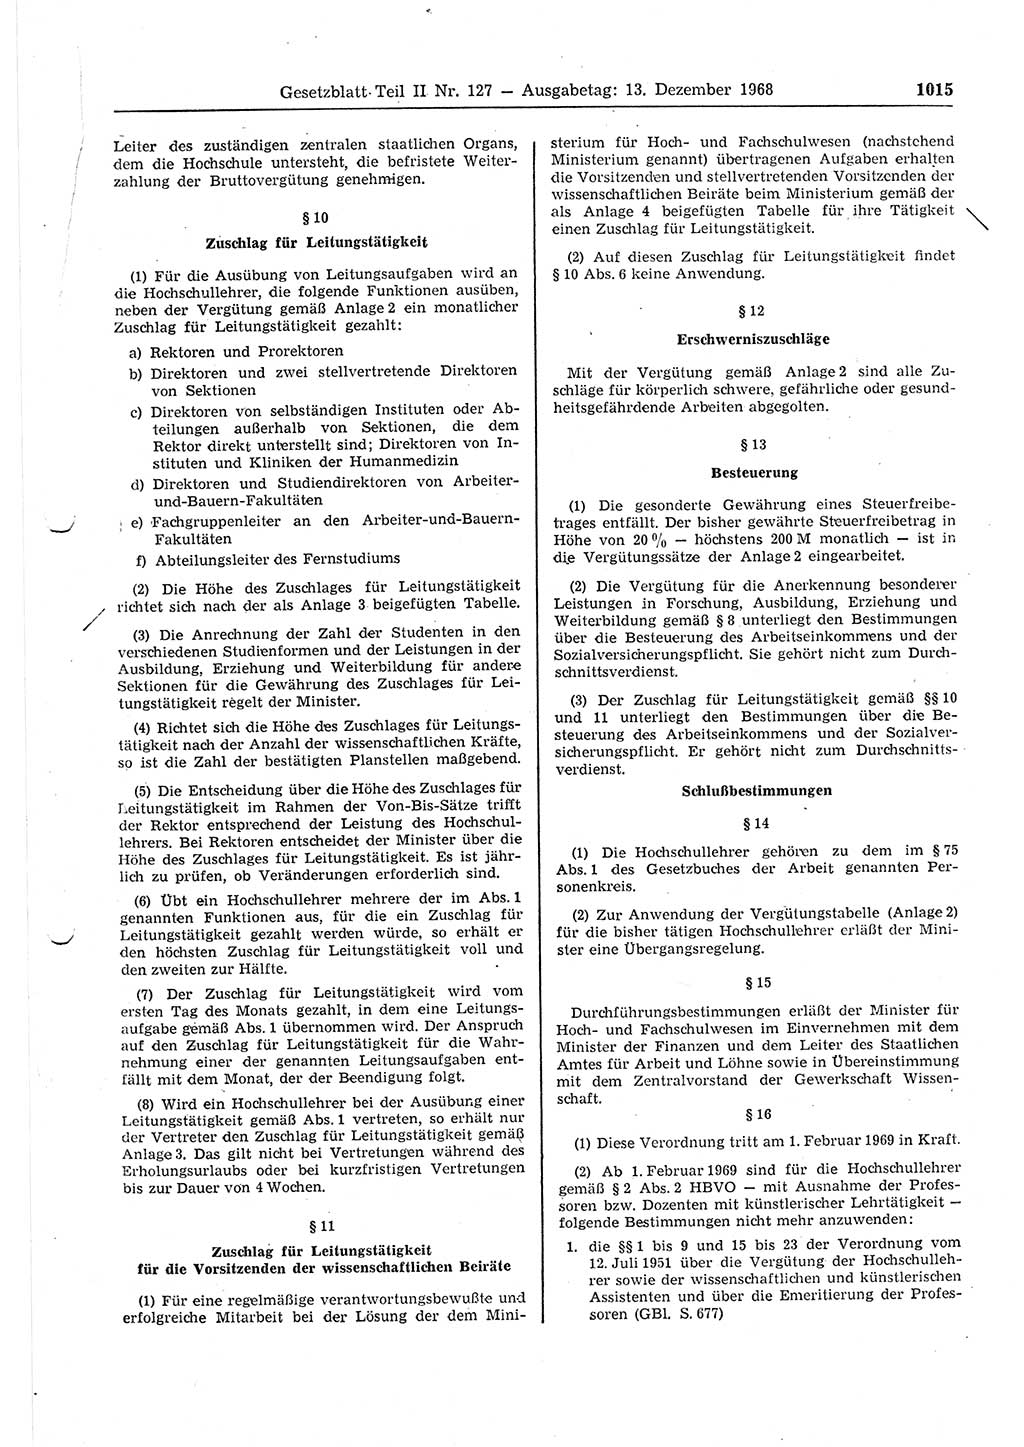 Gesetzblatt (GBl.) der Deutschen Demokratischen Republik (DDR) Teil ⅠⅠ 1968, Seite 1015 (GBl. DDR ⅠⅠ 1968, S. 1015)